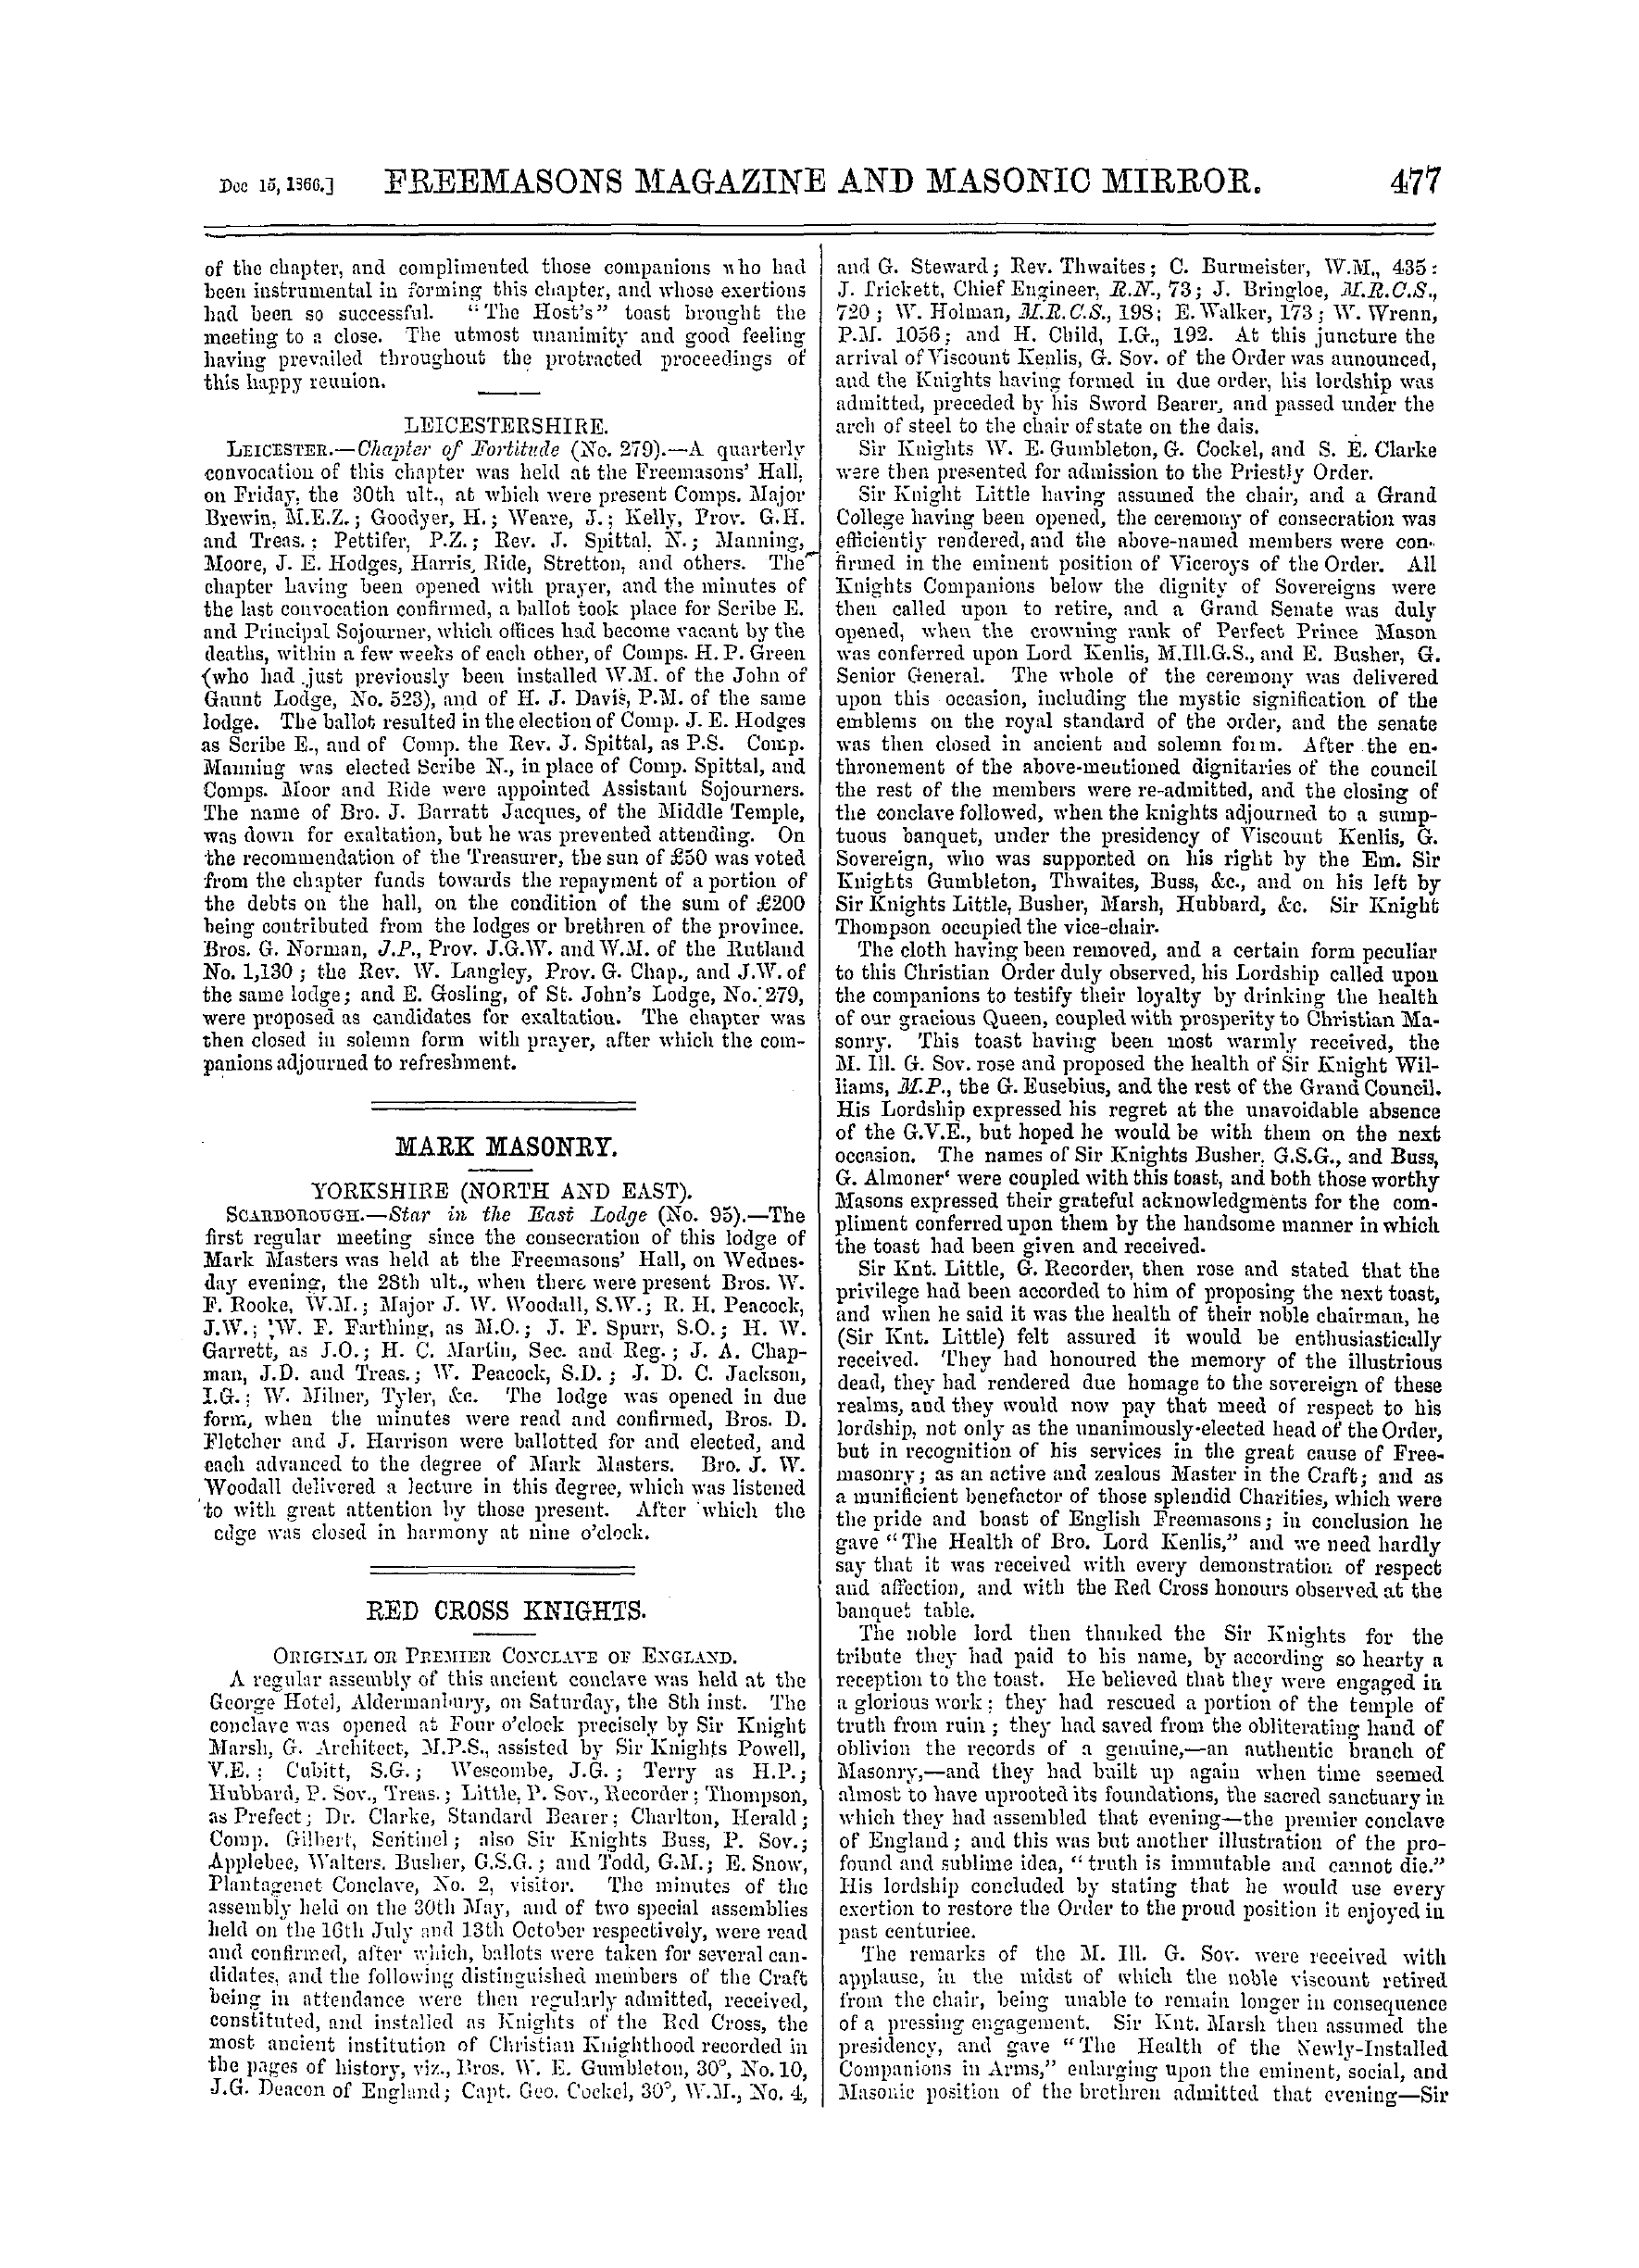 The Freemasons' Monthly Magazine: 1866-12-15 - Mark Masonry.